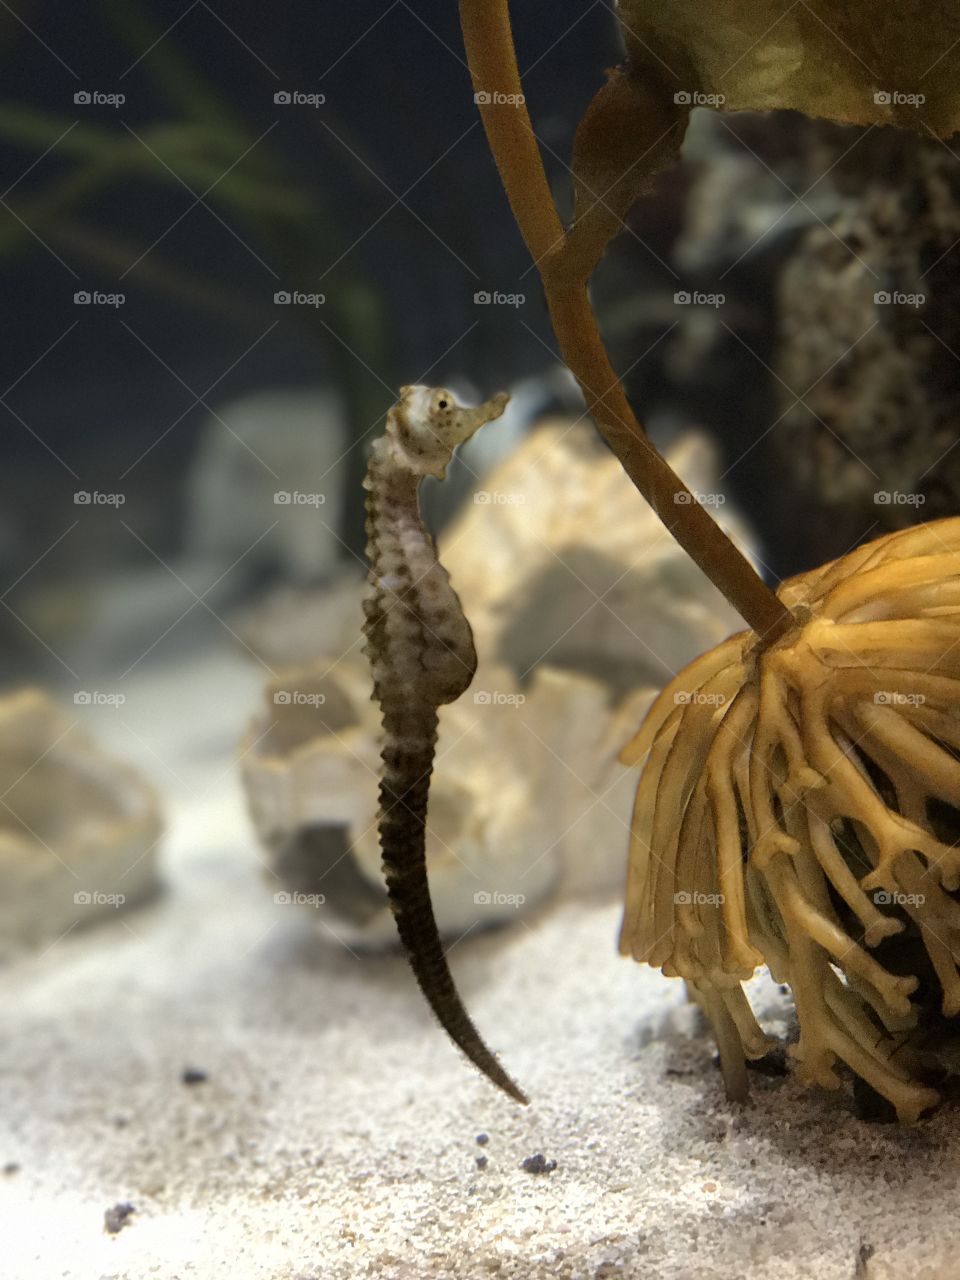 Georgia Aquarium | Atlanta, GA